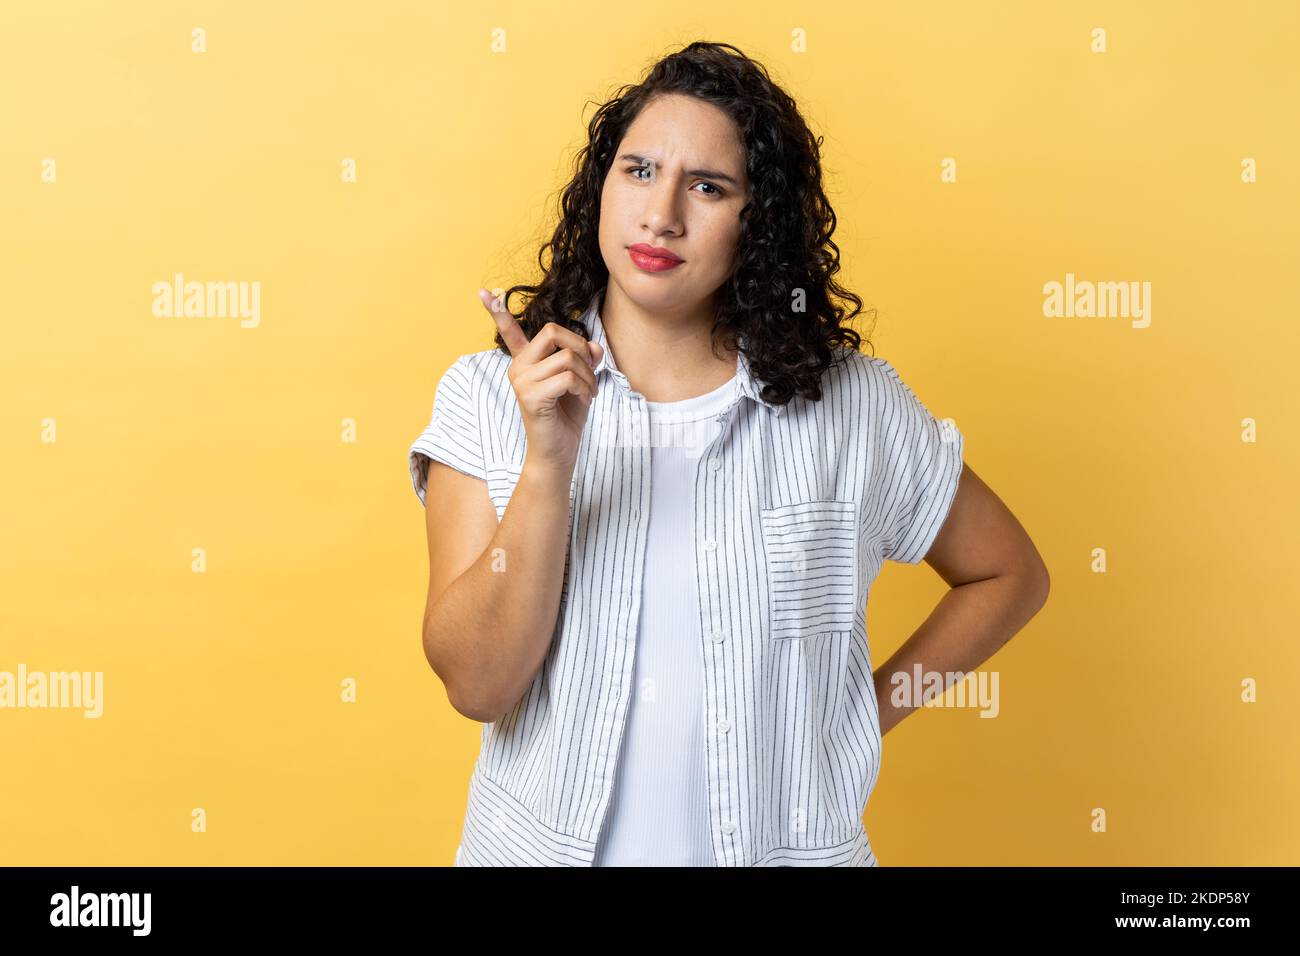 Porträt einer ernsthaften strengen Frau mit dunklen welligen Haaren, die mit dem Finger auf die Kamera zeigt und mit unzufriedenem, verdächtigem Ausdruck aussieht. Innenaufnahme des Studios isoliert auf gelbem Hintergrund. Stockfoto